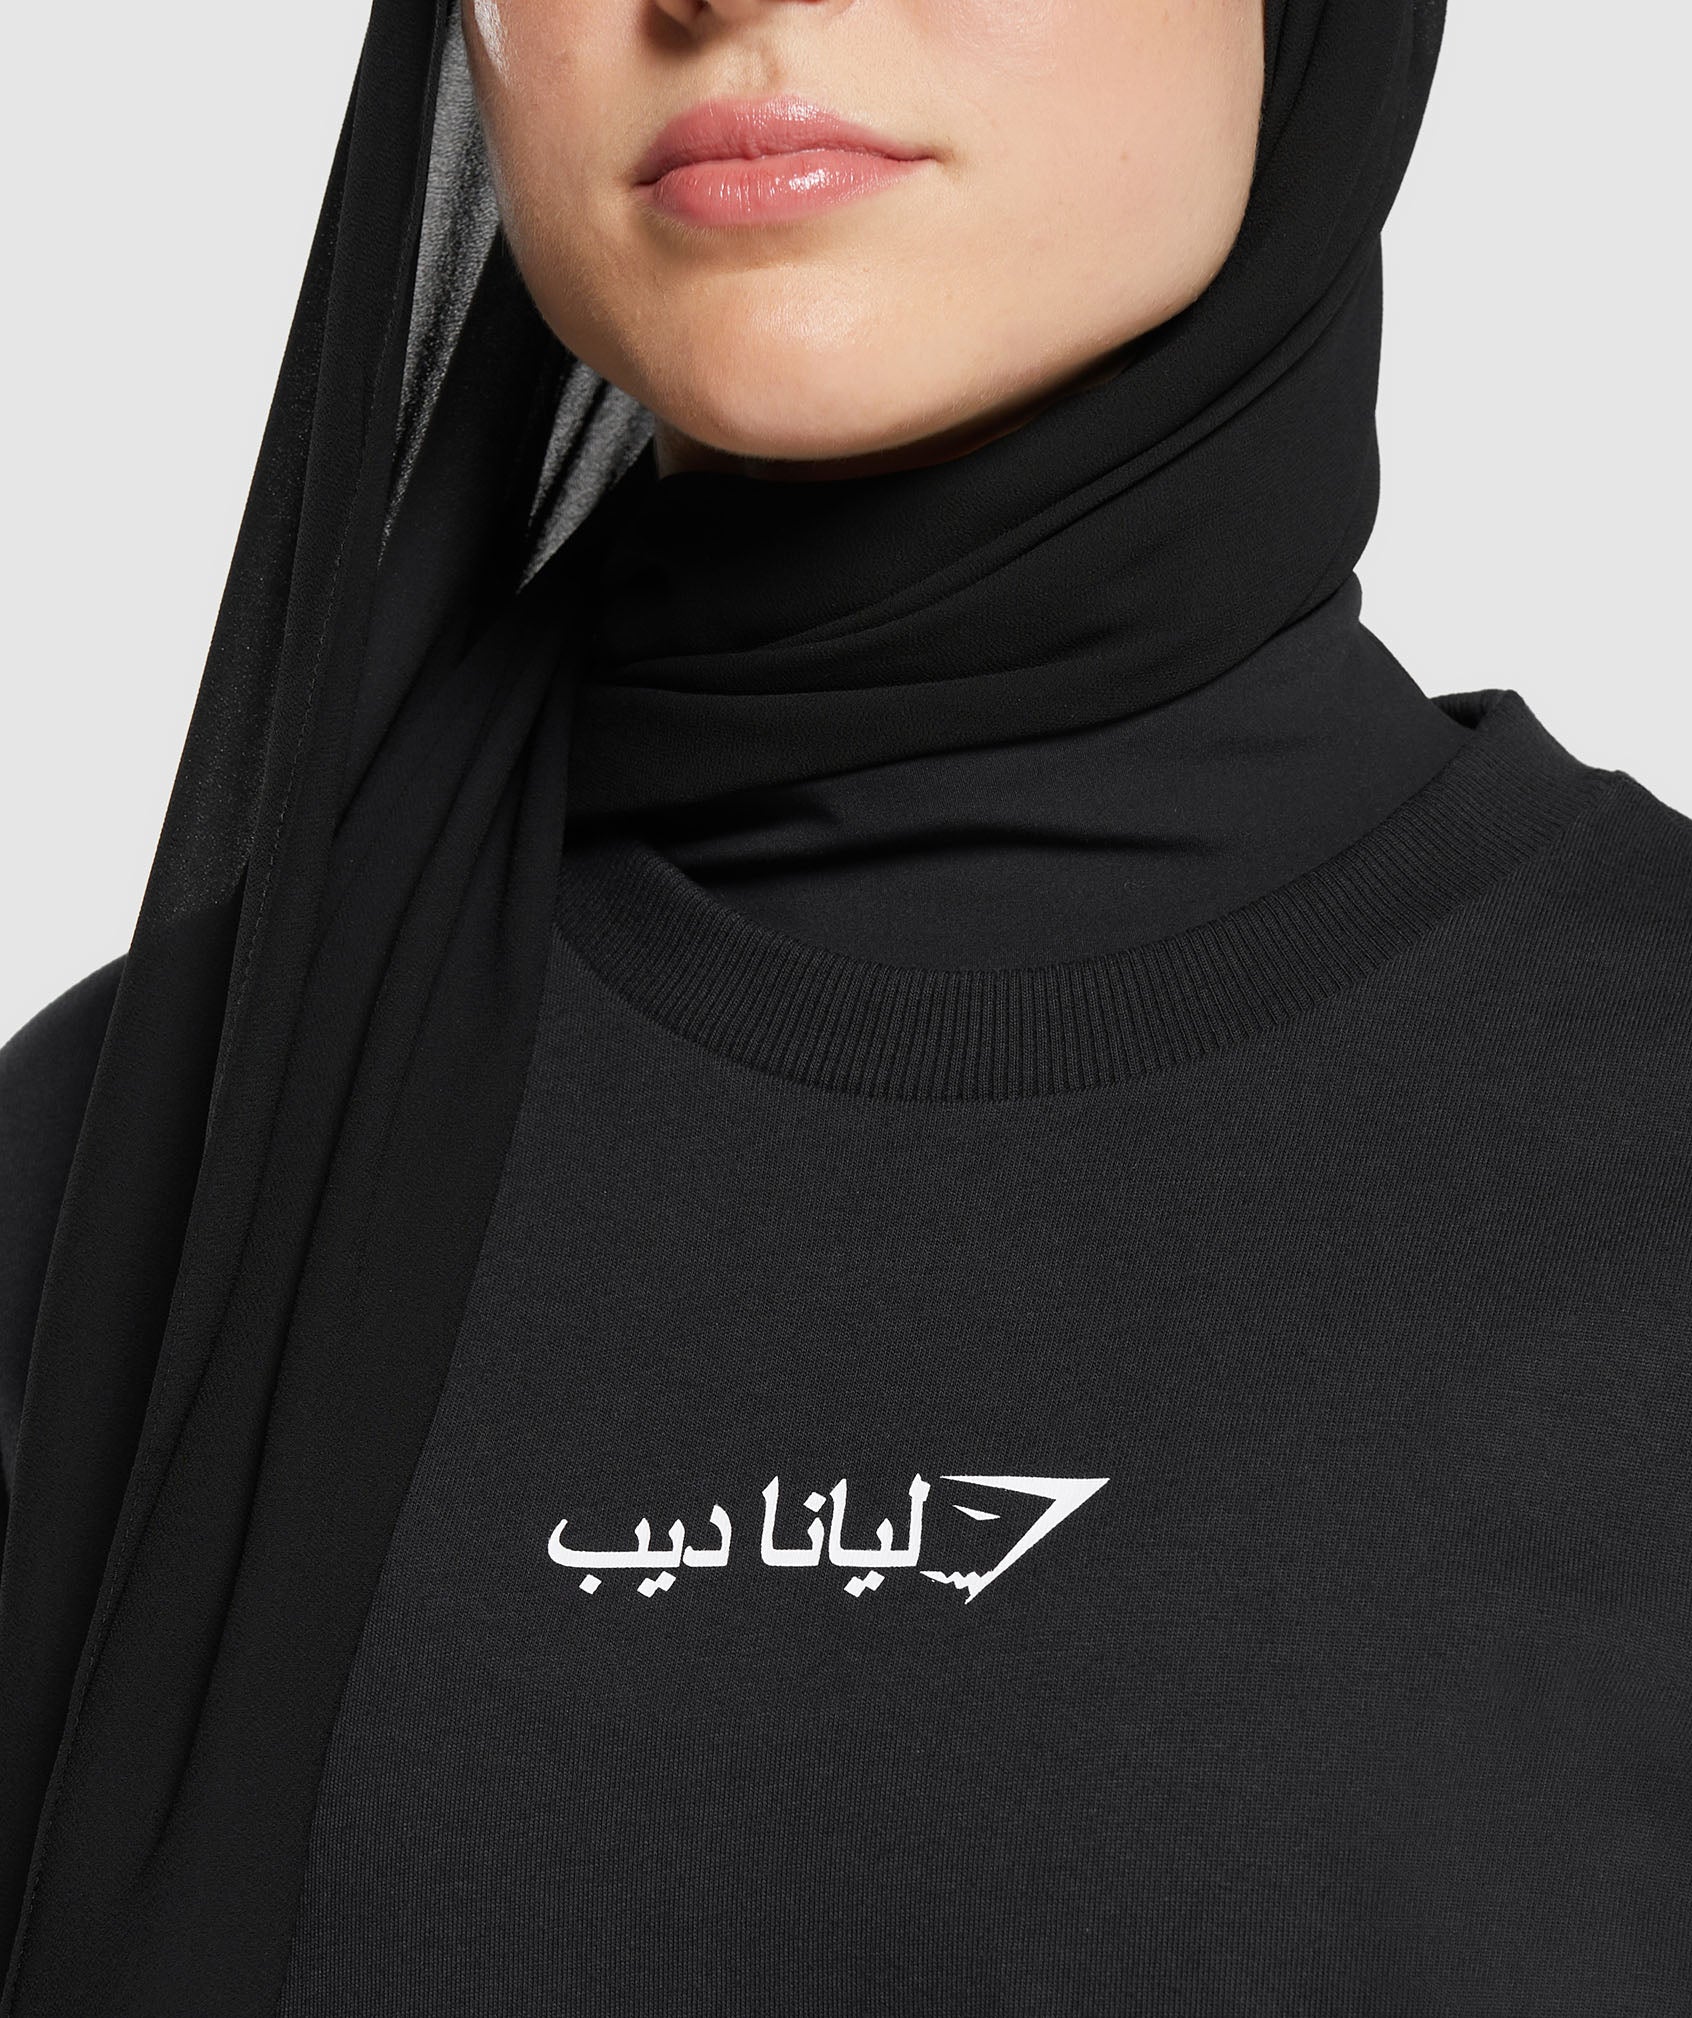 GS X Leana Deeb Oversized Long Sleeve Top in Black - view 5